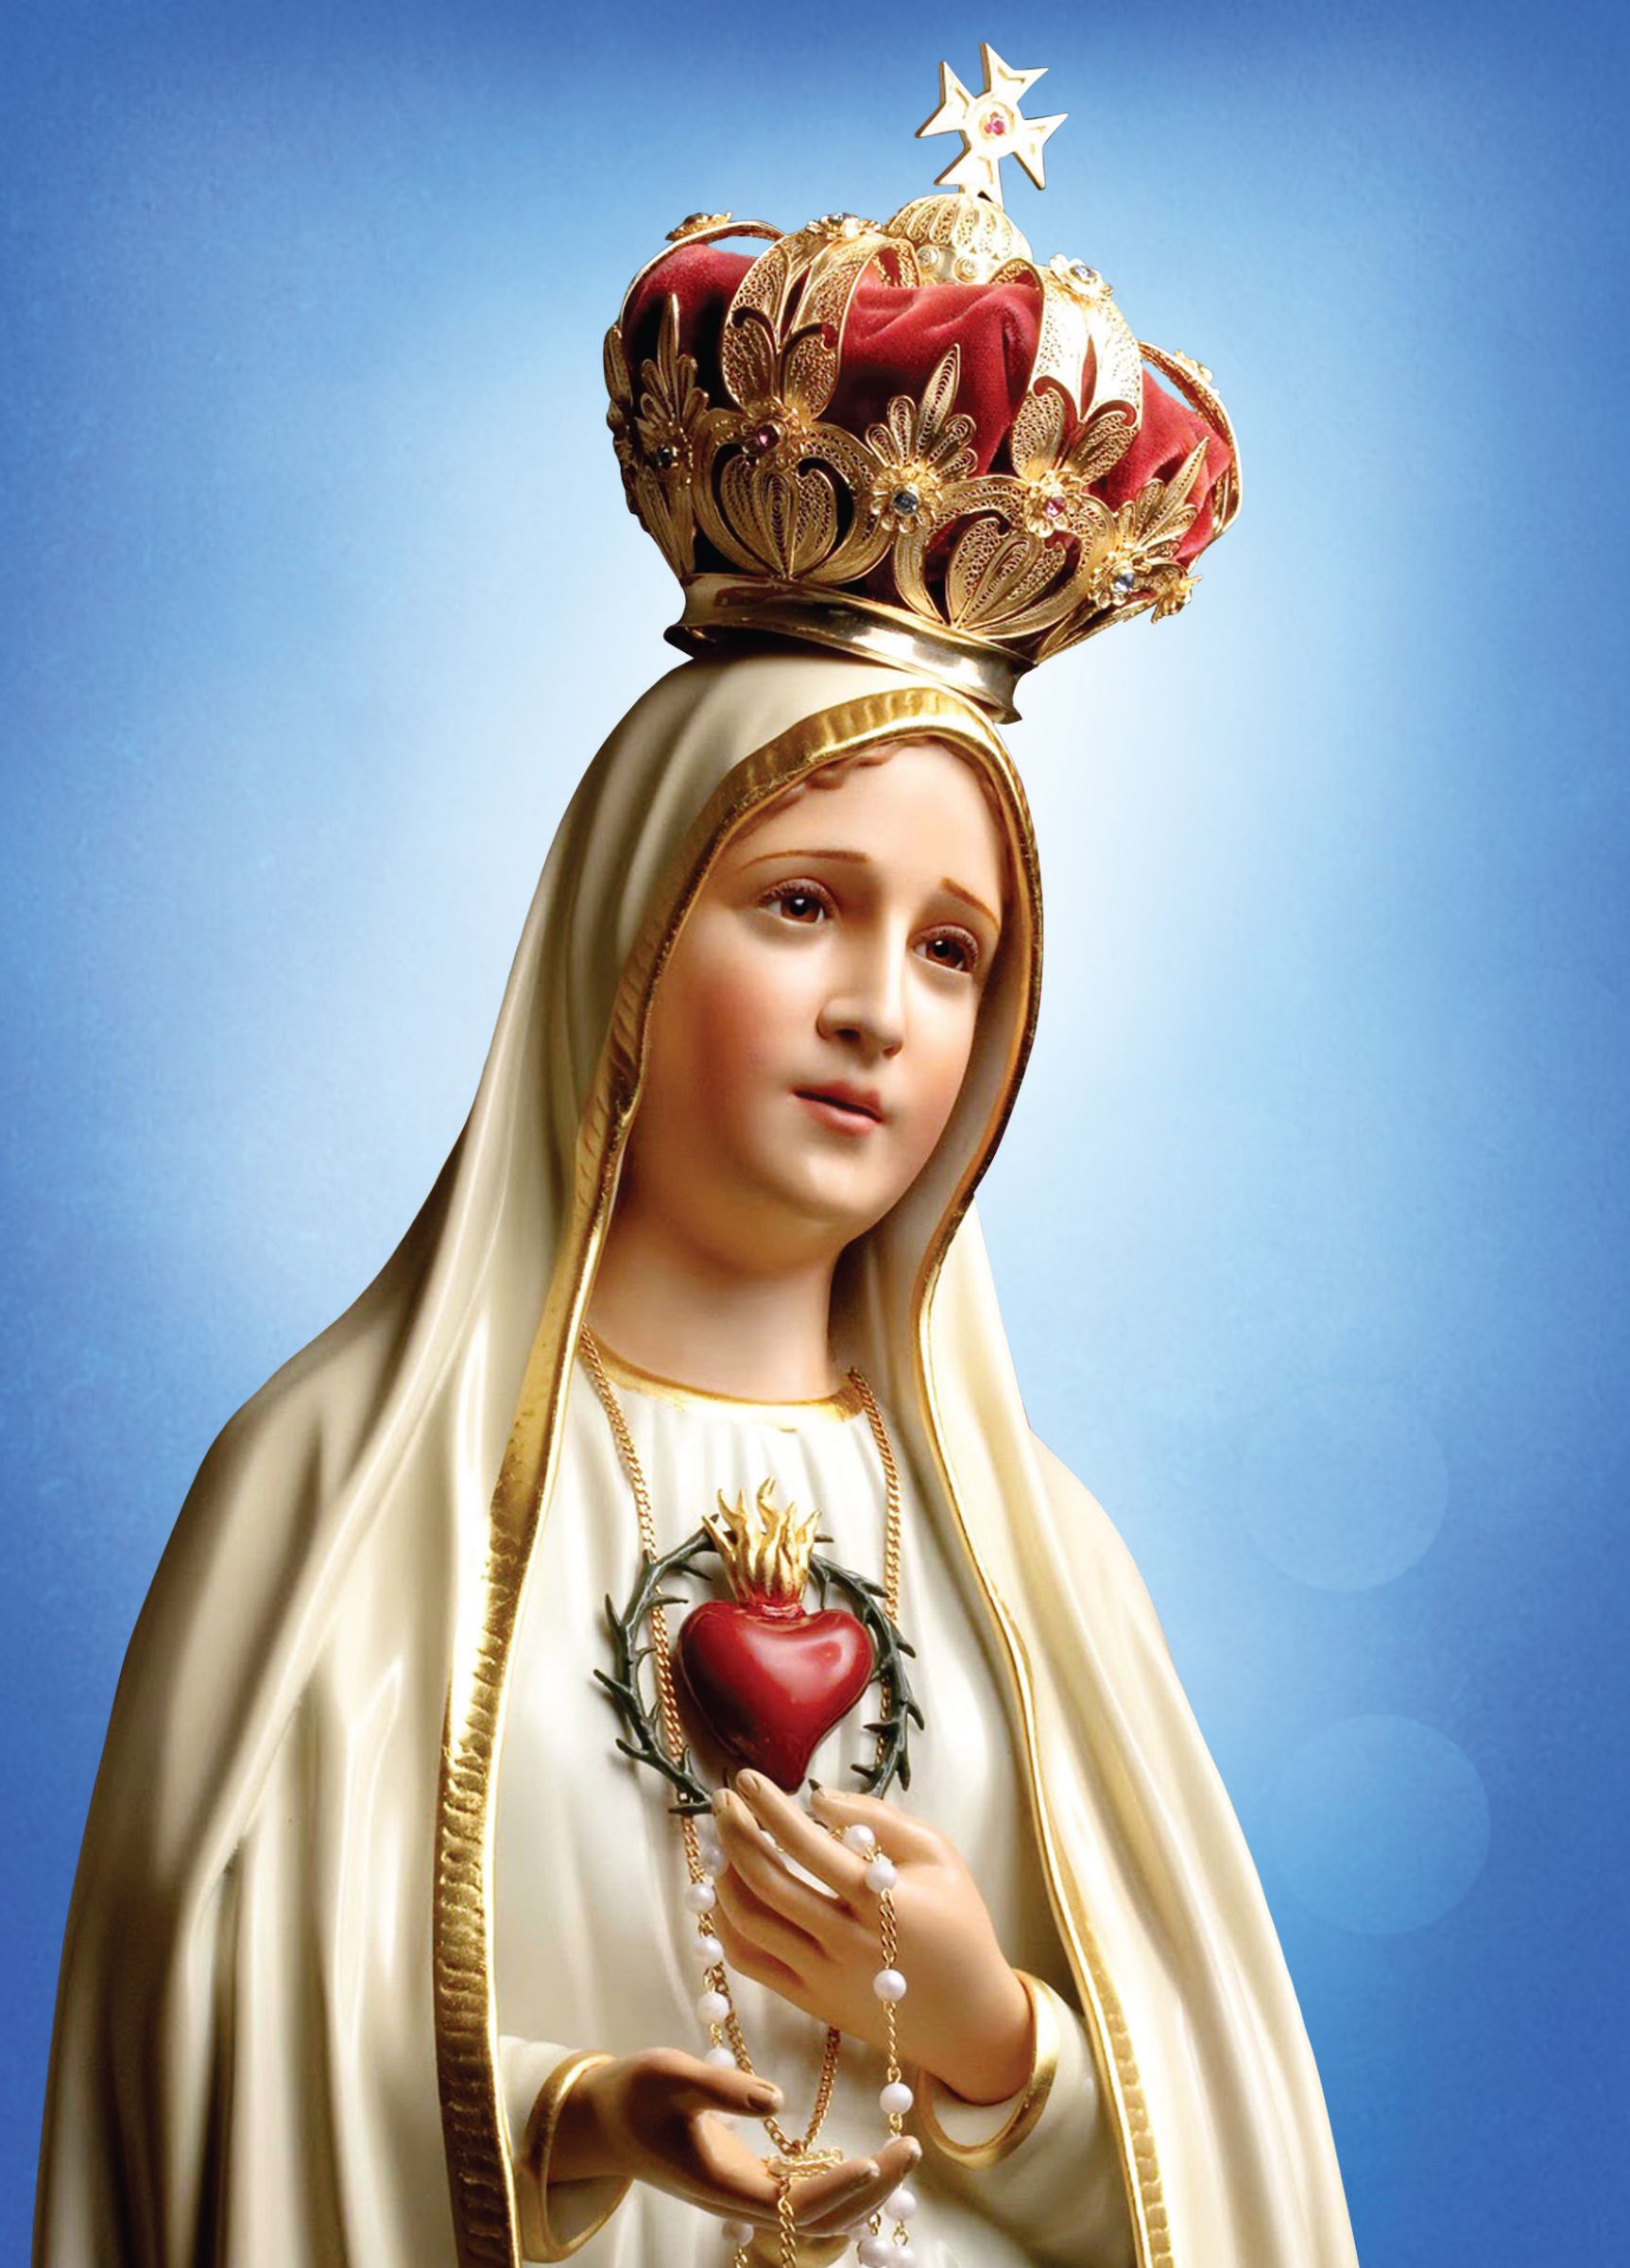 Santa Virgen Maria de Fatima. Santo del día 13 de mayo